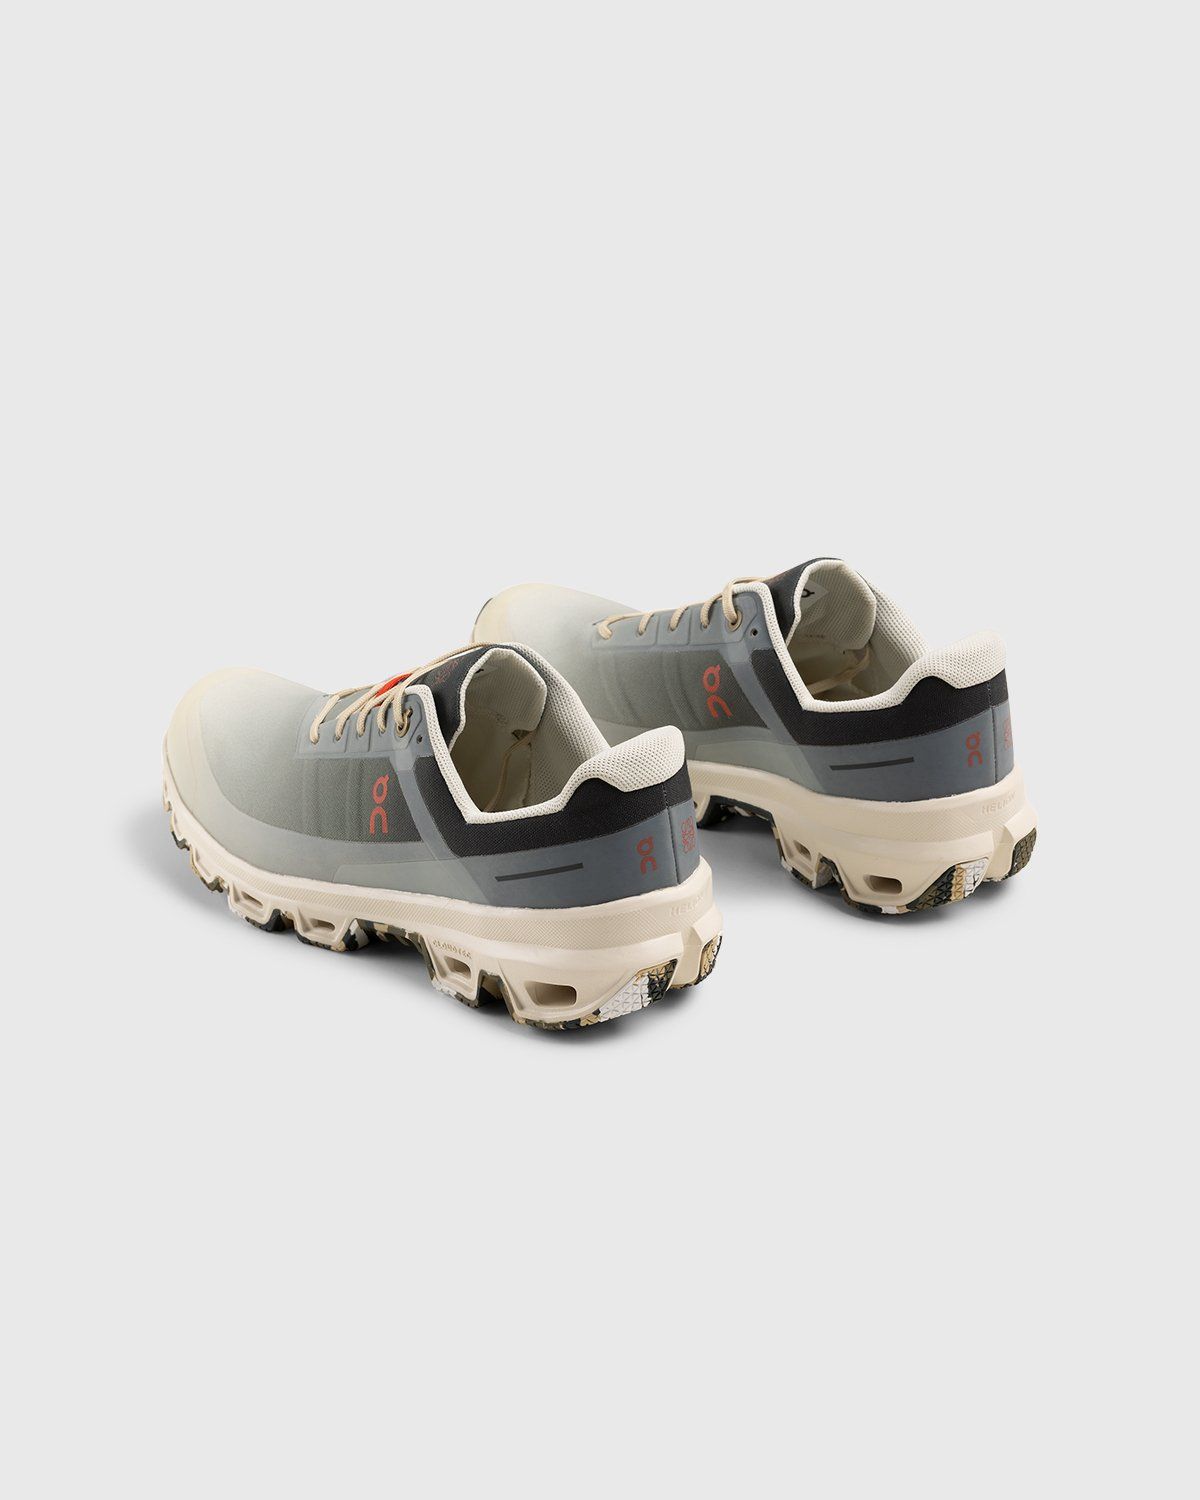 Loewe x On – Men's Cloudventure Gradient Khaki - Low Top Sneakers - Grey - Image 4